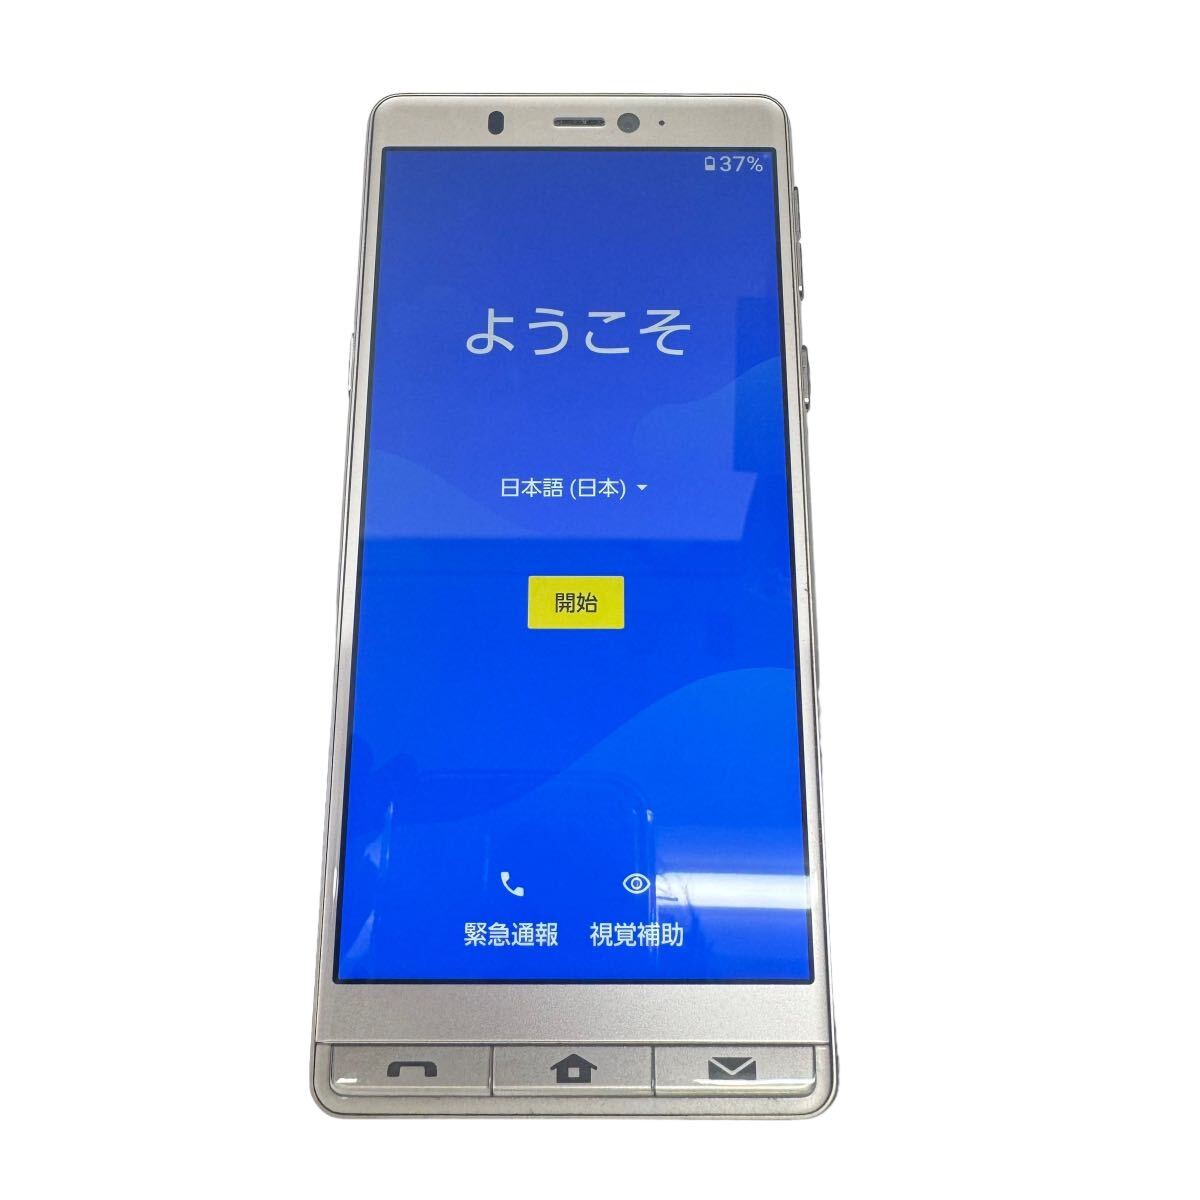 中古美品 softbank SHARP シンプルスマホ5 A001SH Android スマートフォン 残債なし 32GB ゴールド 9950の画像1